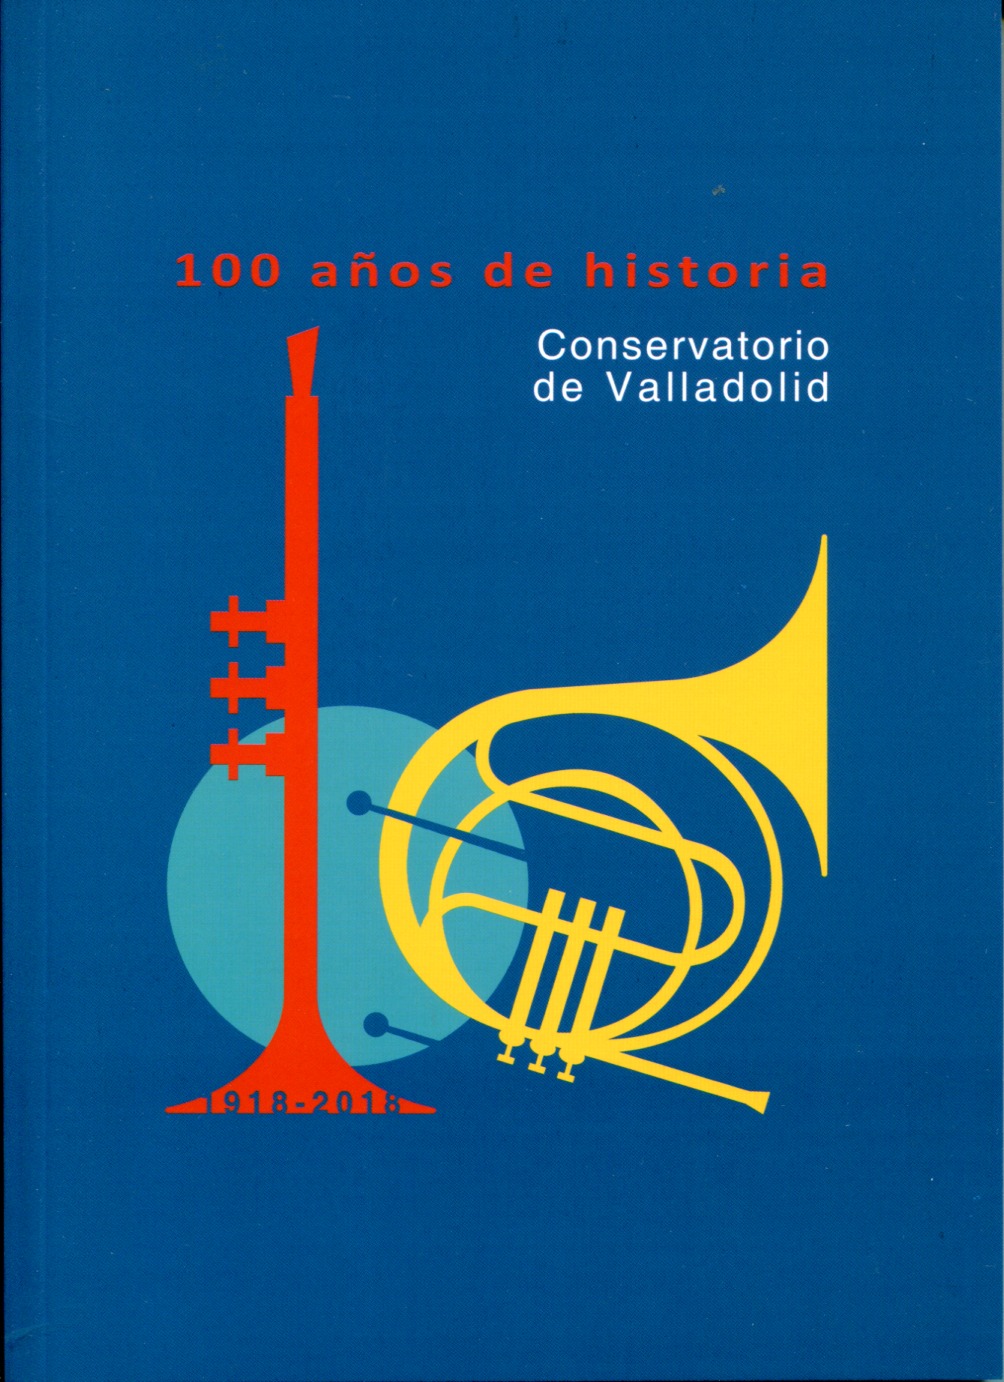 100 años de historia-Conservatorio de Valladolid